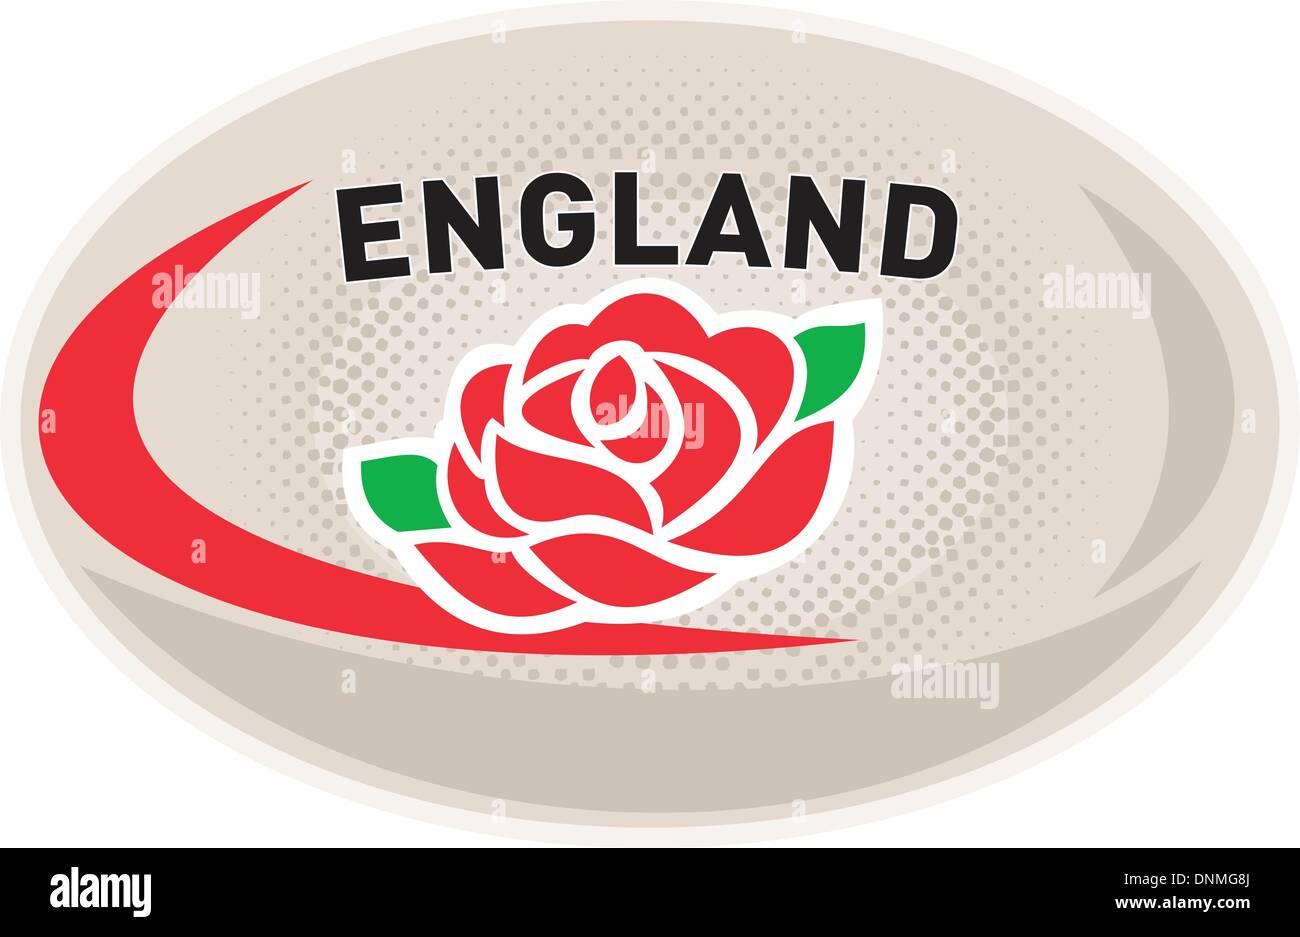 Abbildung von einem Rugby-Ball mit englischen rose Blume und Worte England auf isolierten weißen Hintergrund Stock Vektor